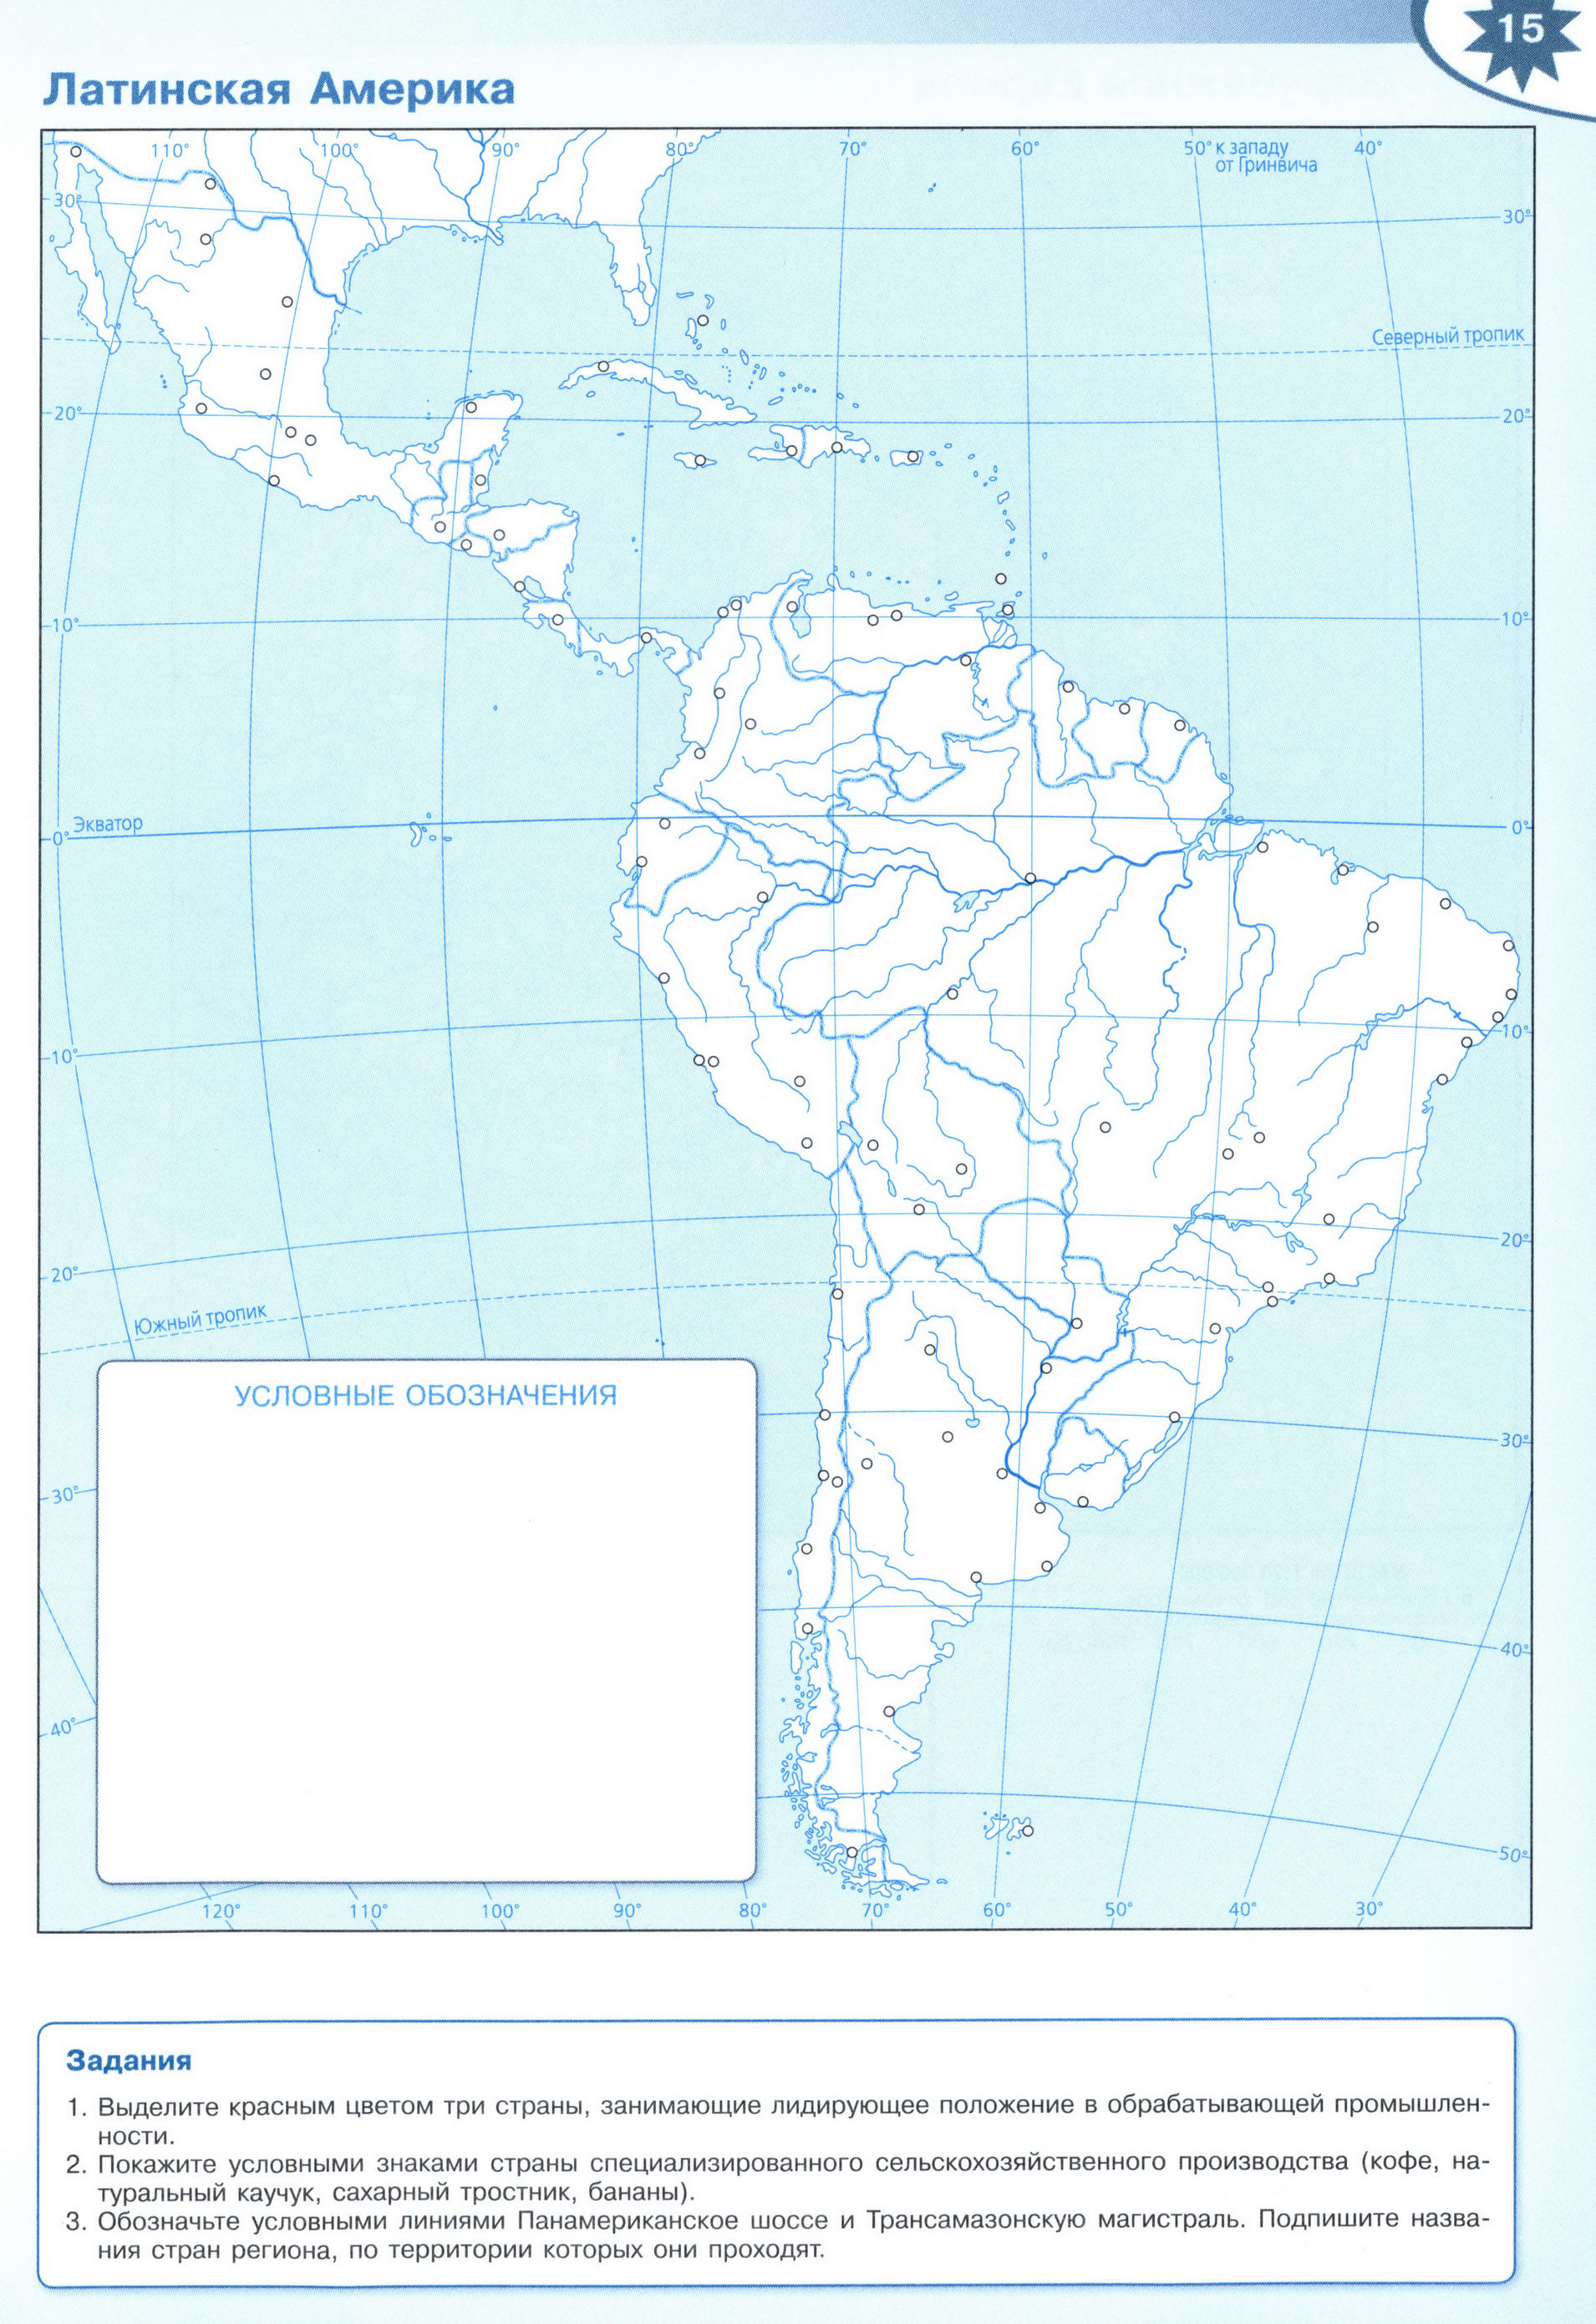 Контурные карты просвещение южная америка